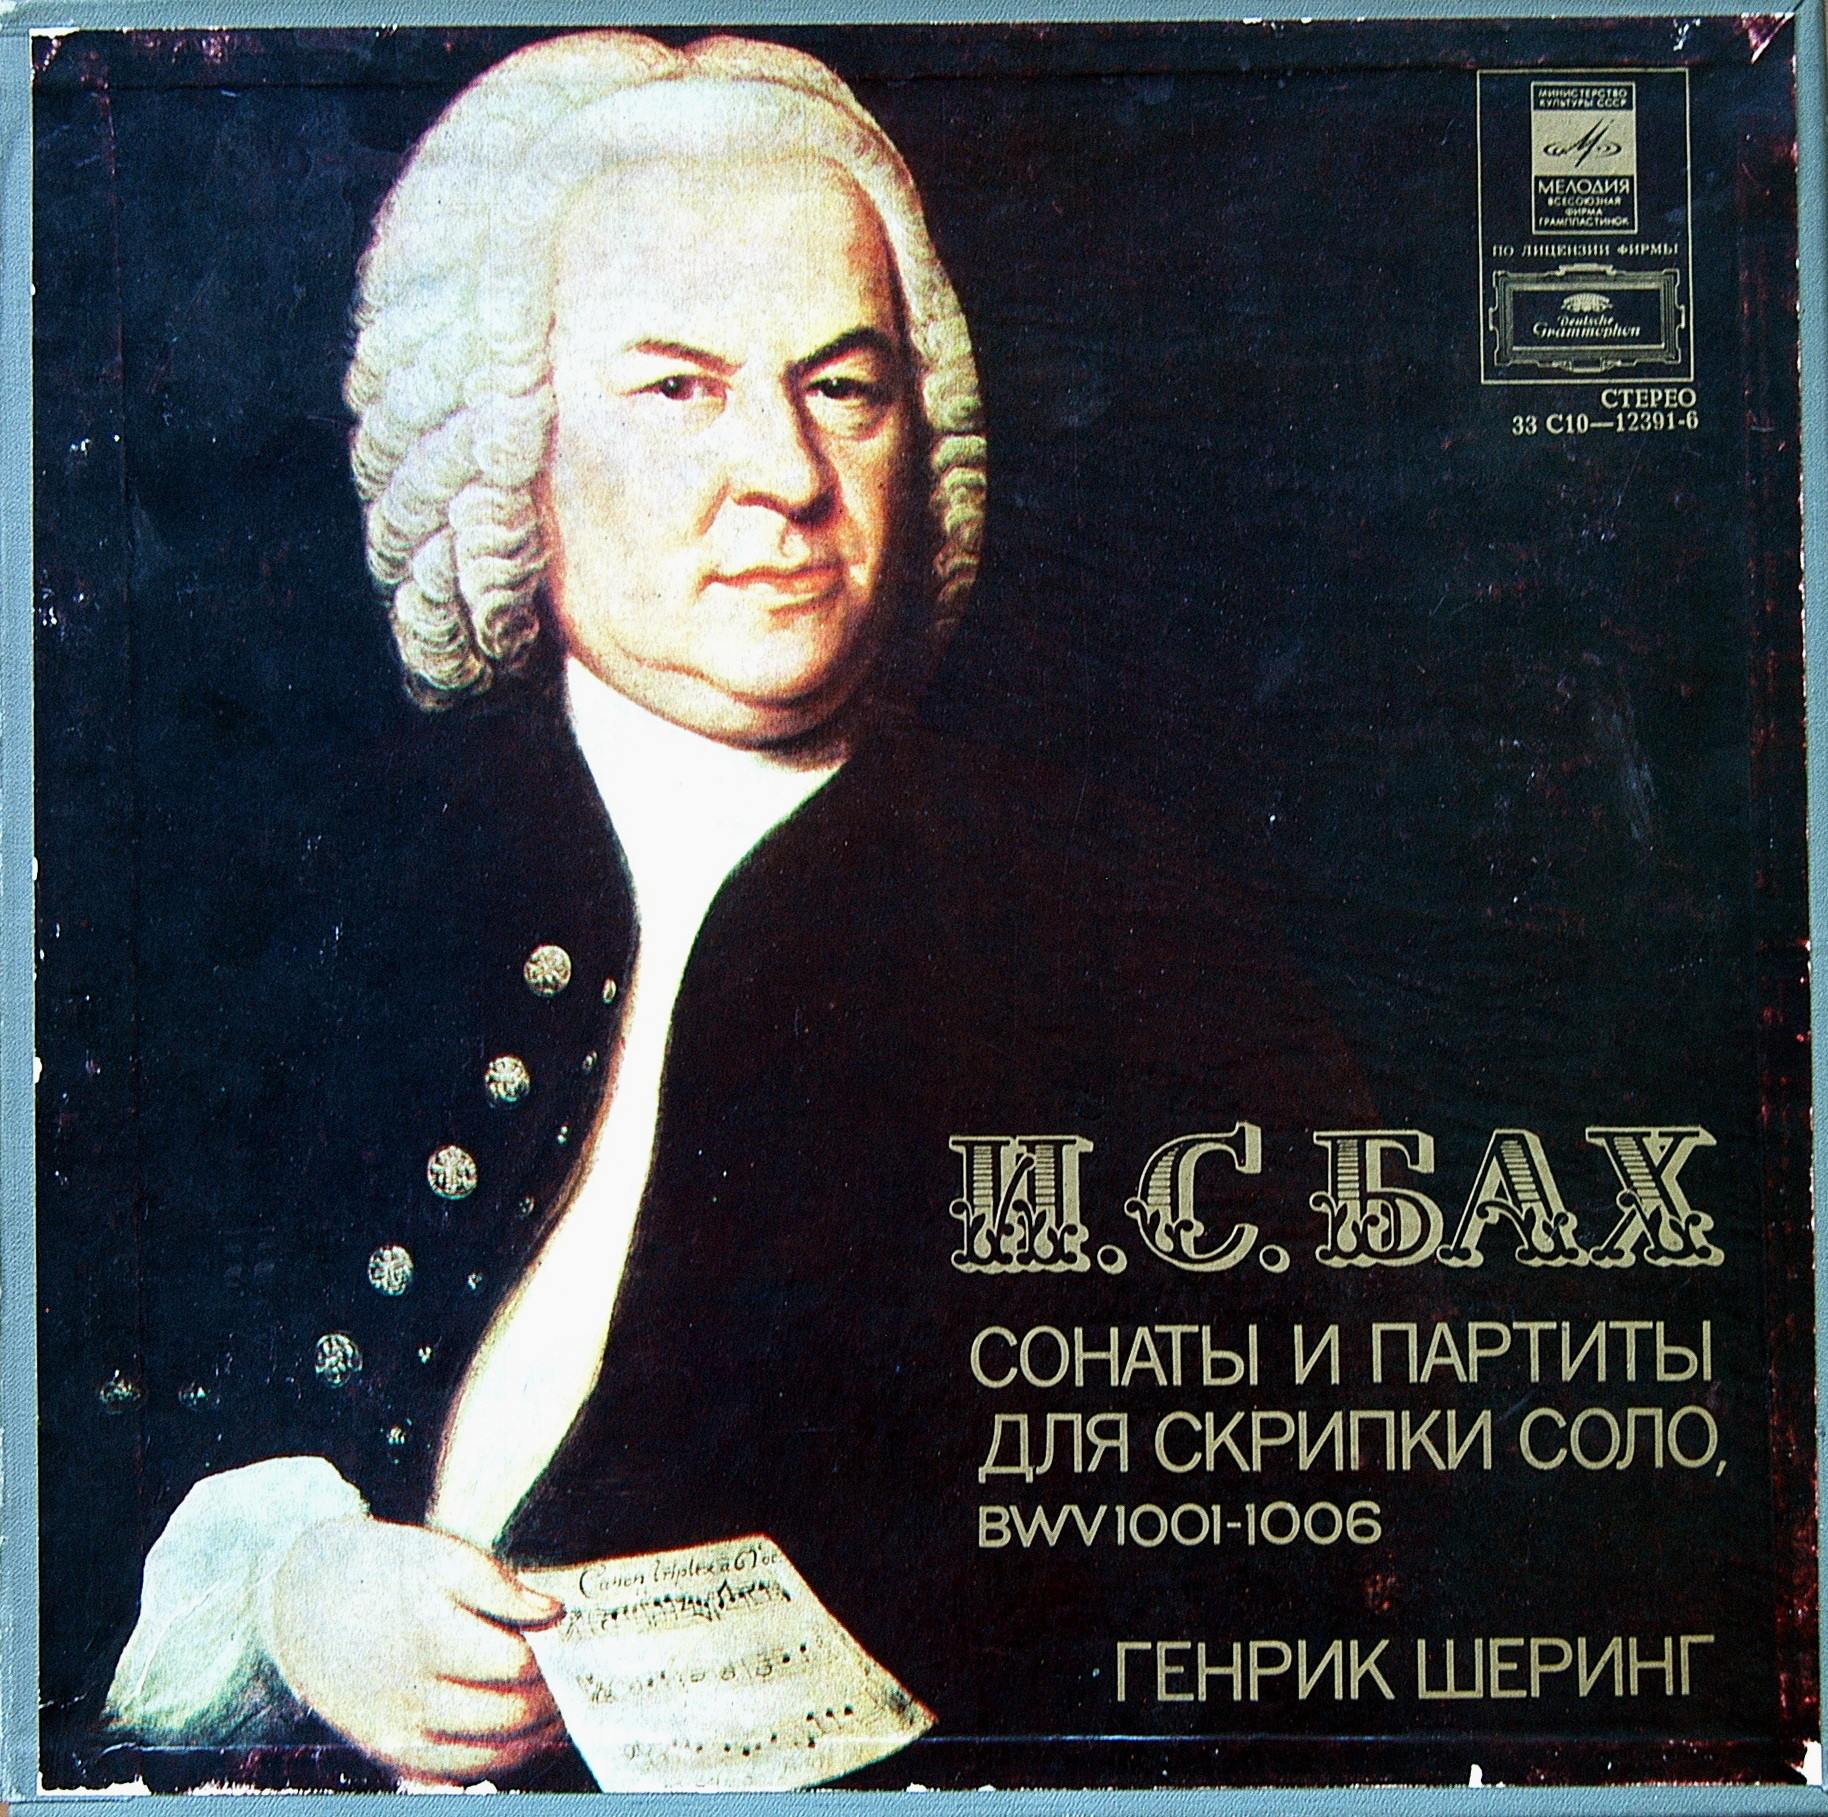 И. С. БАХ (1685—1750): Сонаты и партиты для скрипки соло (Г. Шеринг)